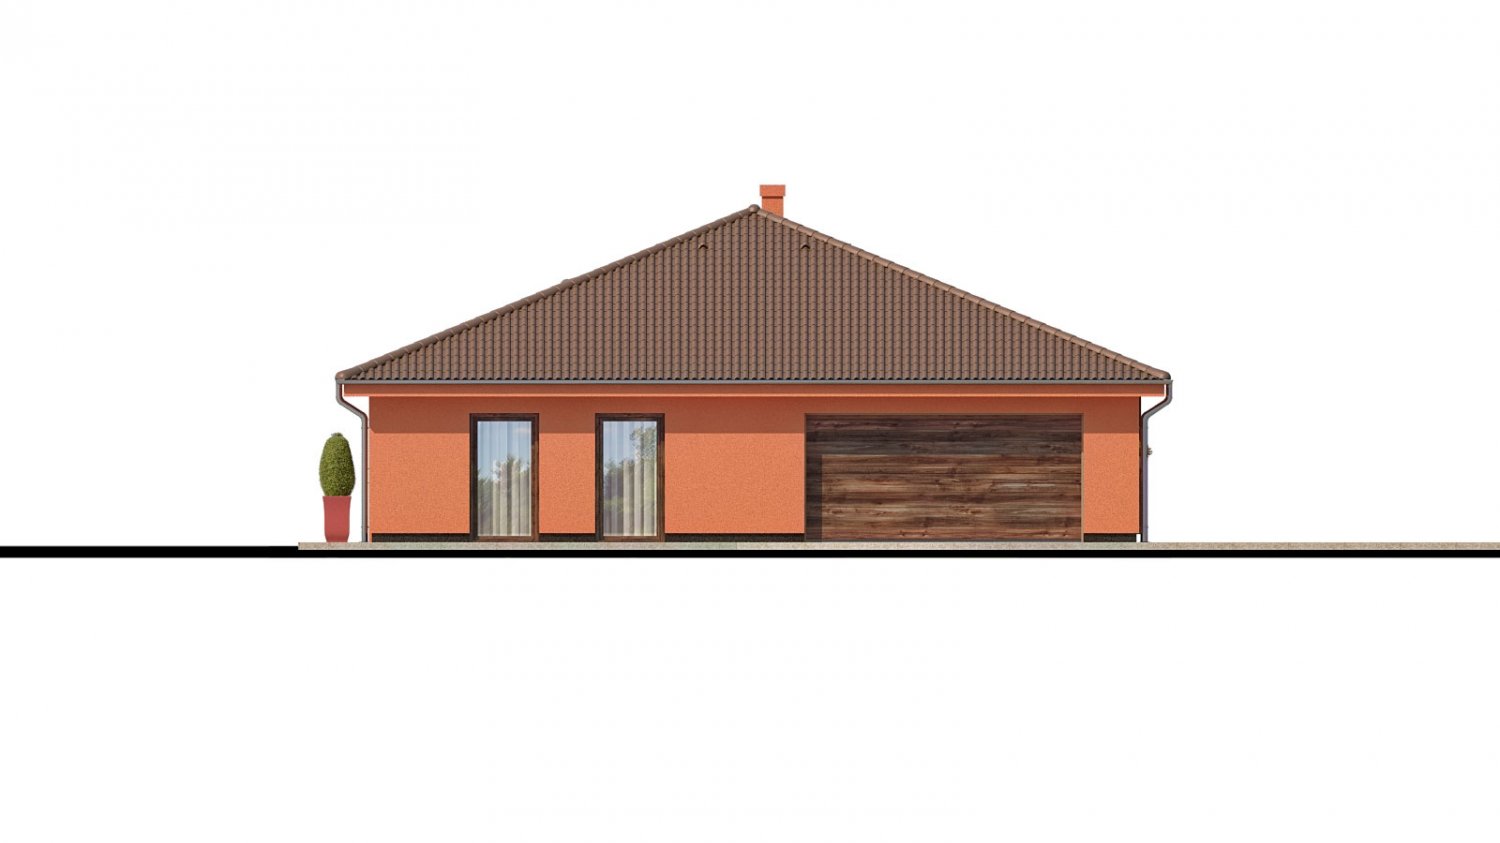 Pohľad 4. - Exkluzivní jednoduchý dům s dvojgaráží a krytou terasou.